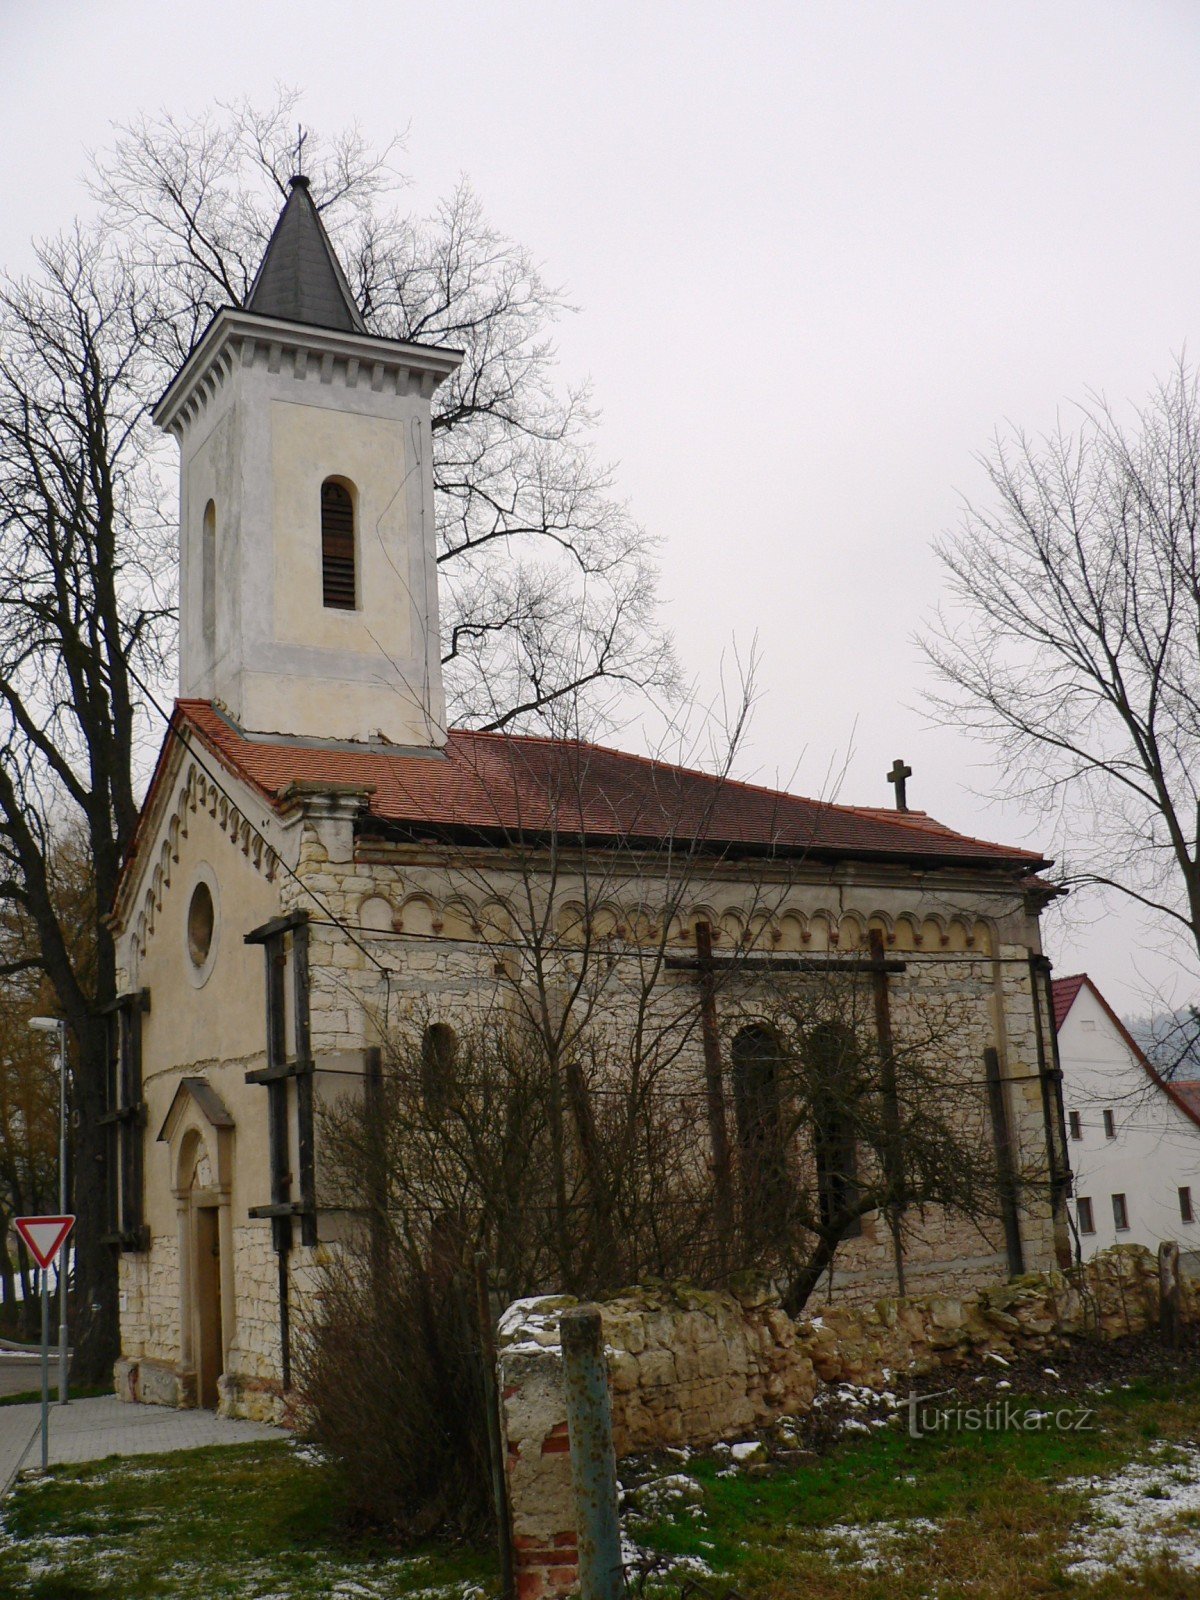 Mutějovice - Szent István-templom. Procopius